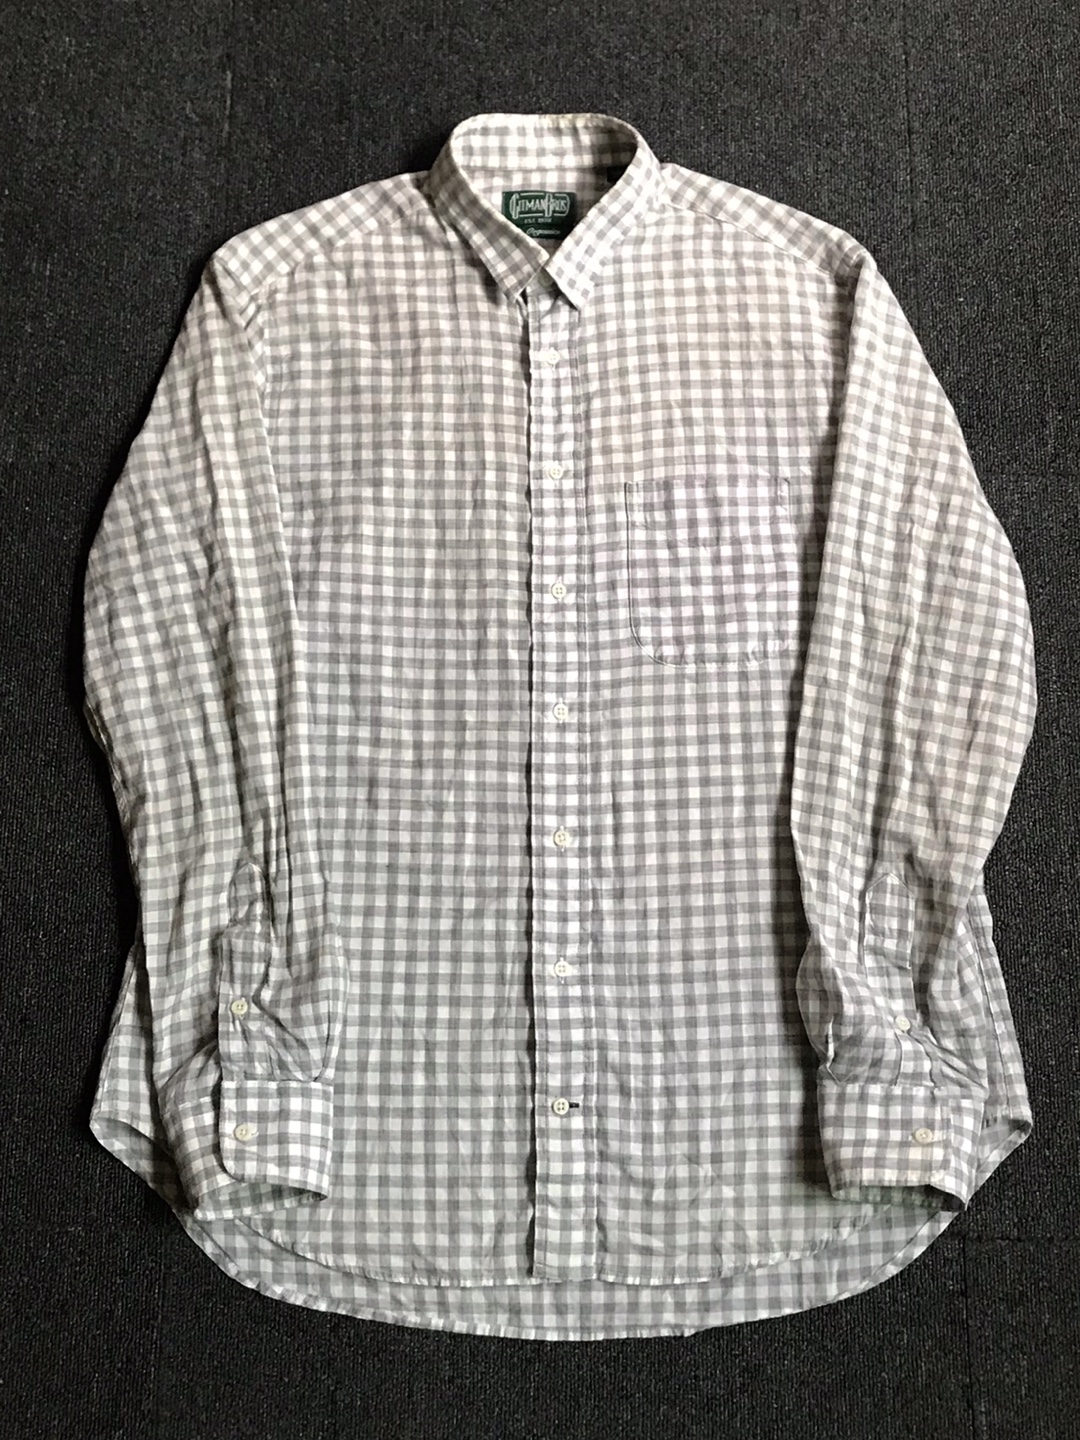 gitmanbros lightweight cotton gingham bd shirt USA made (L size, ~105 추천)